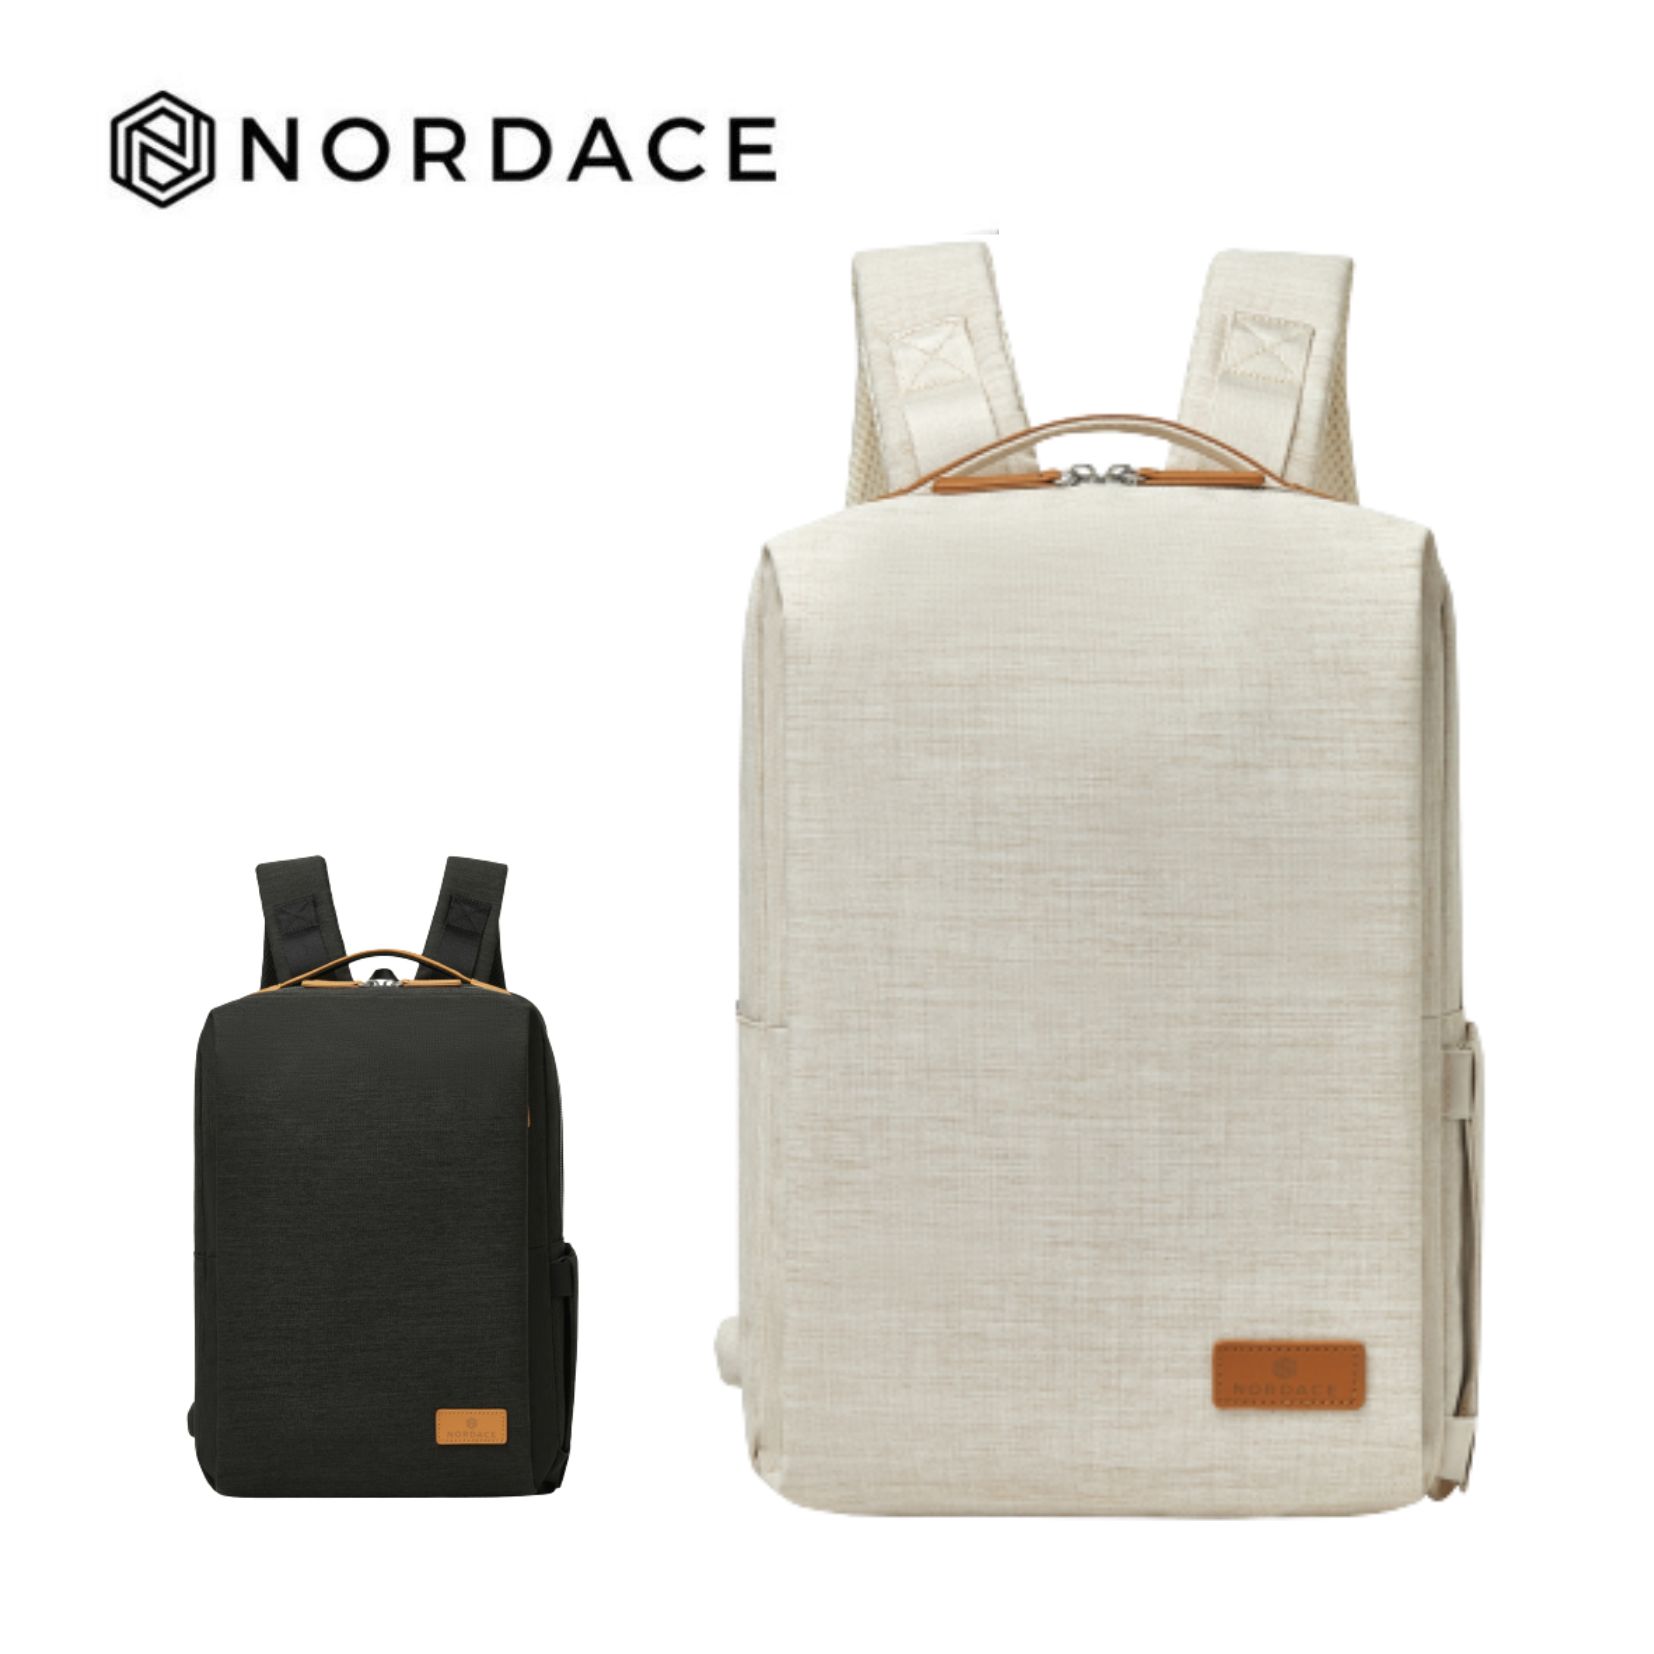 Nordace Siena Pro 13 智能背包 後背包 雙肩包男女百搭通勤背包 側背包 男包 女包 防潑水-兩色可選-米色